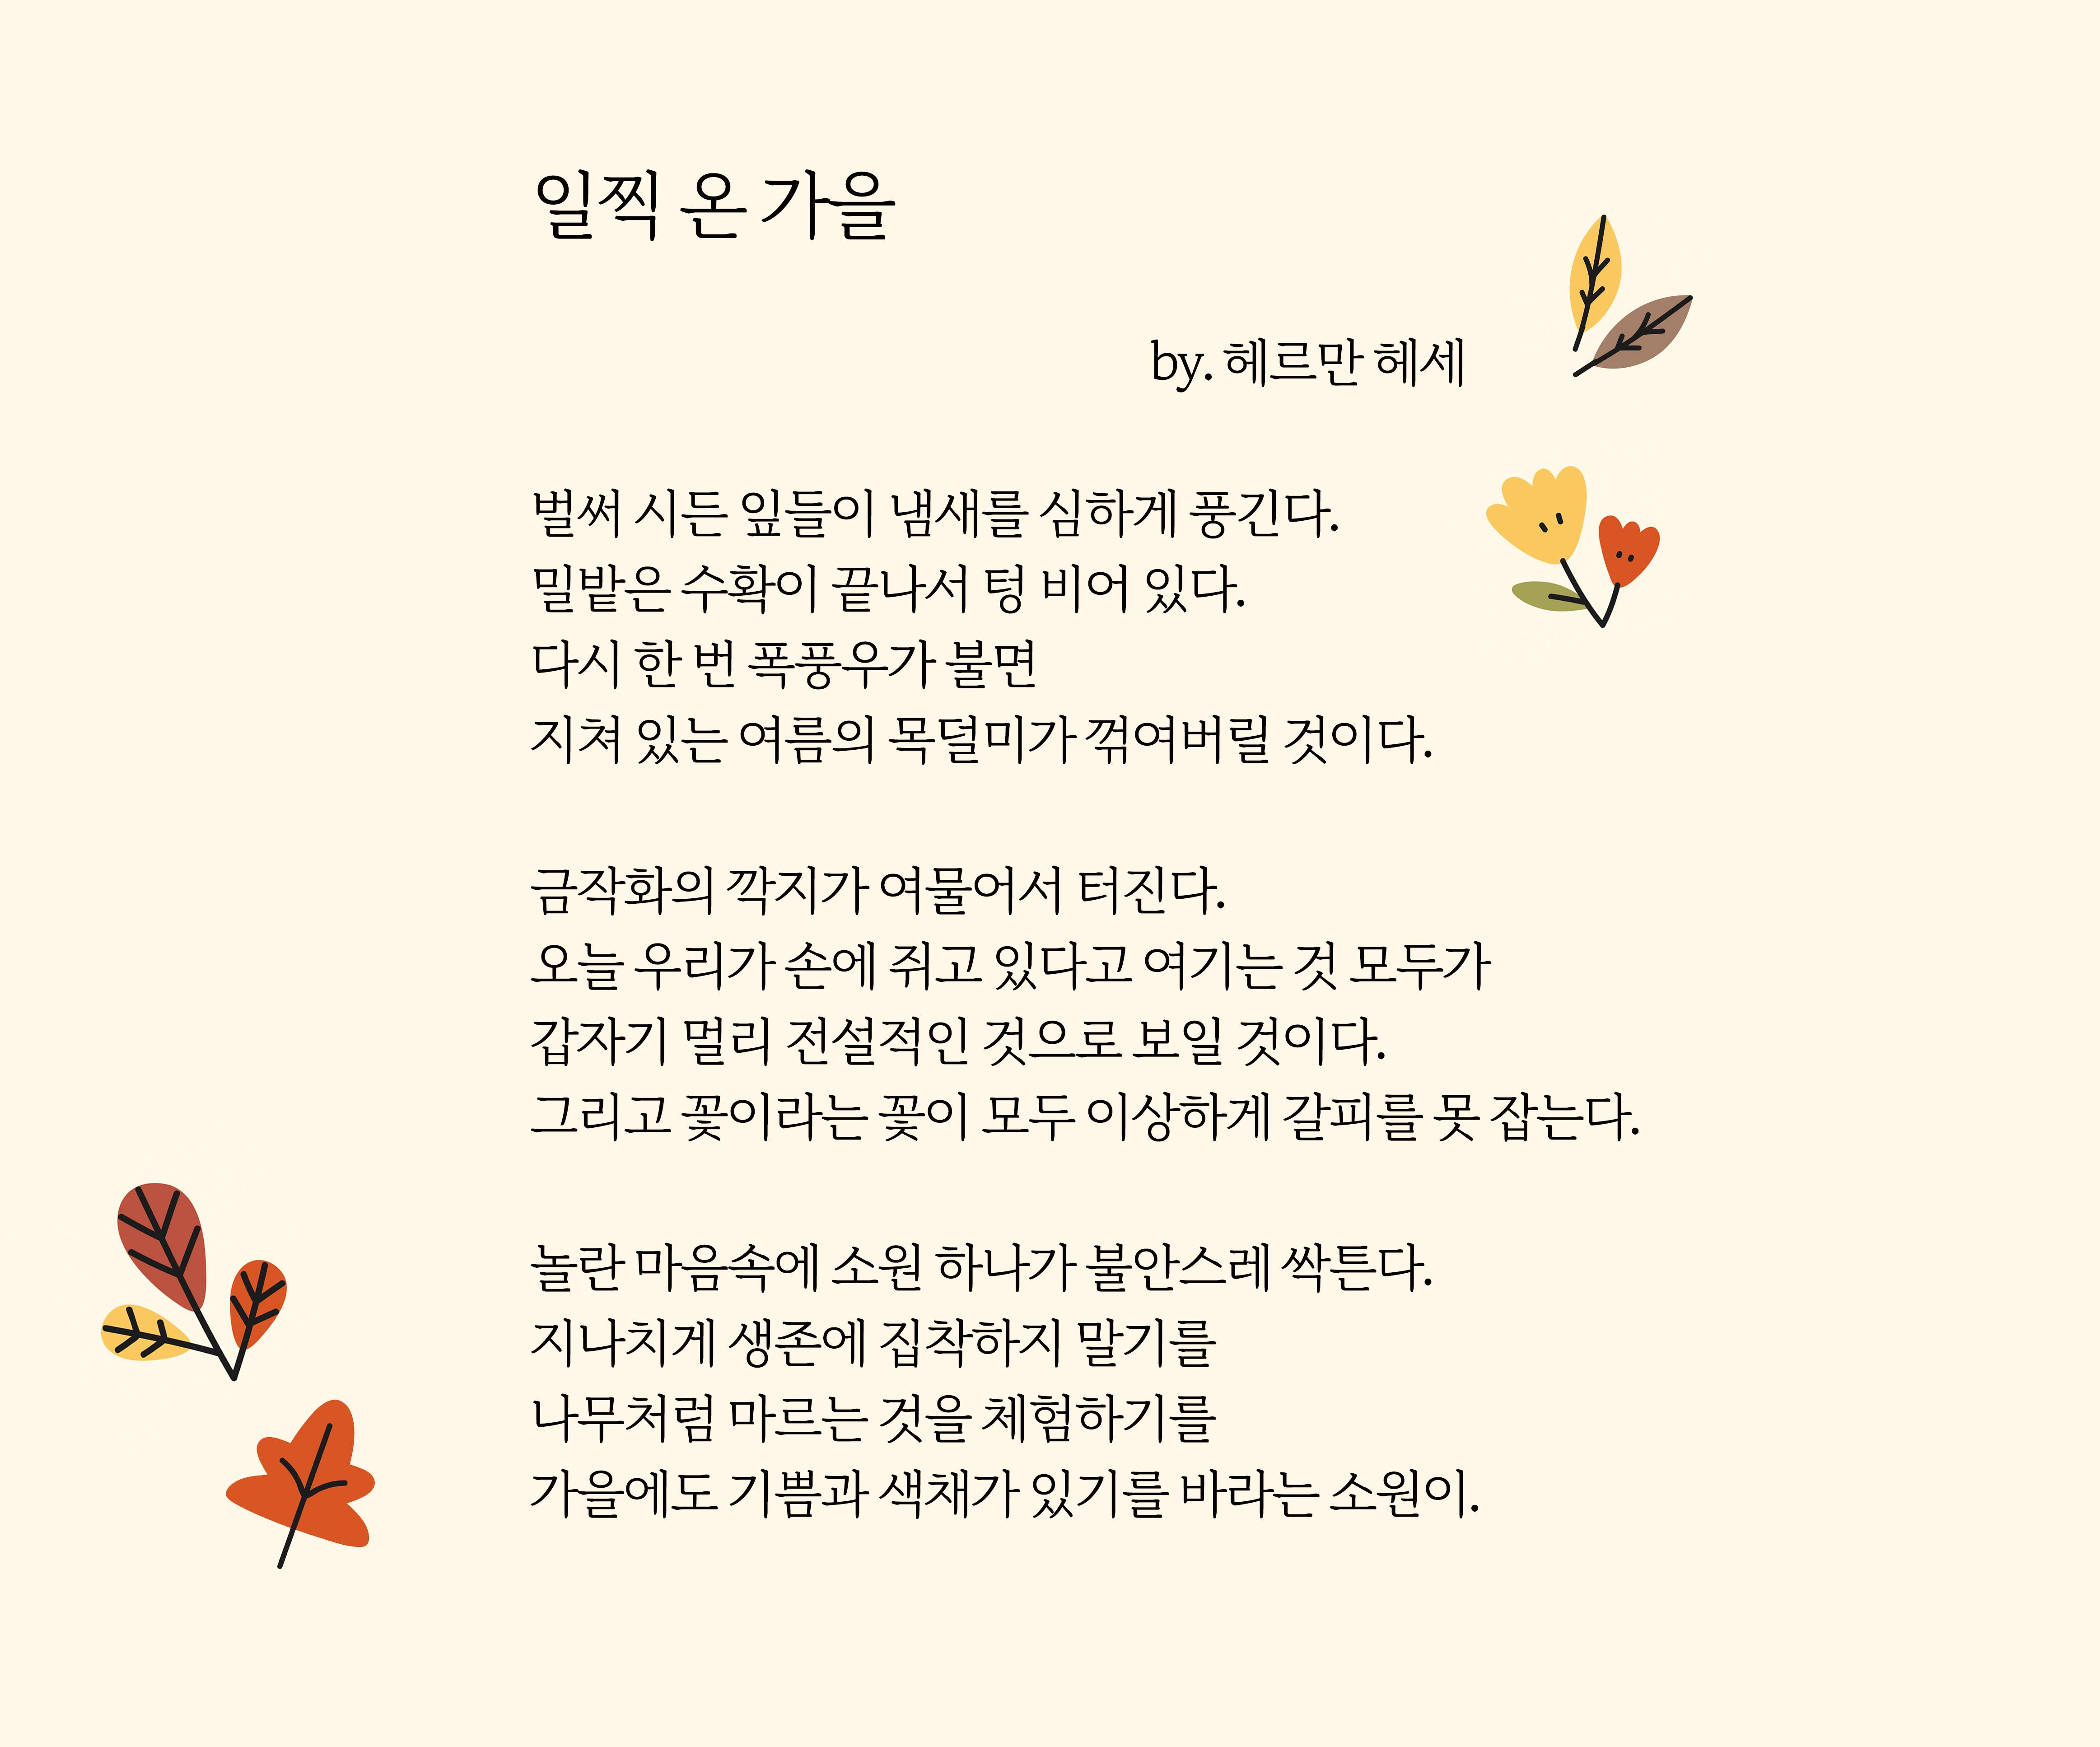 『헤르만 헤세 시집』(송영택 옮김, 문예출판사, 2013)에서.